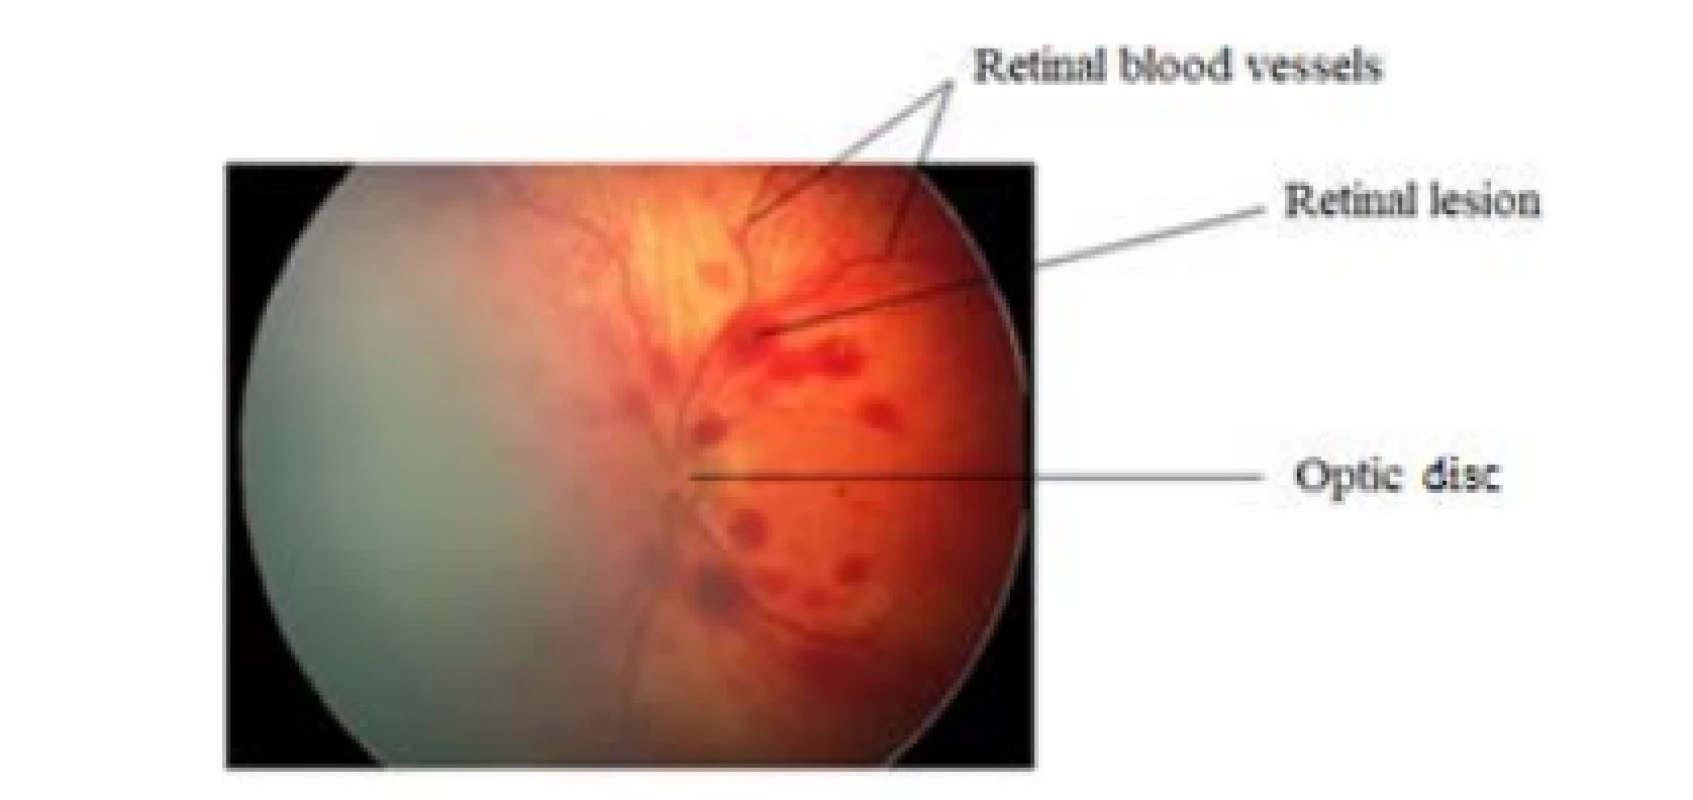 Description of a retinal image from RetCam3.